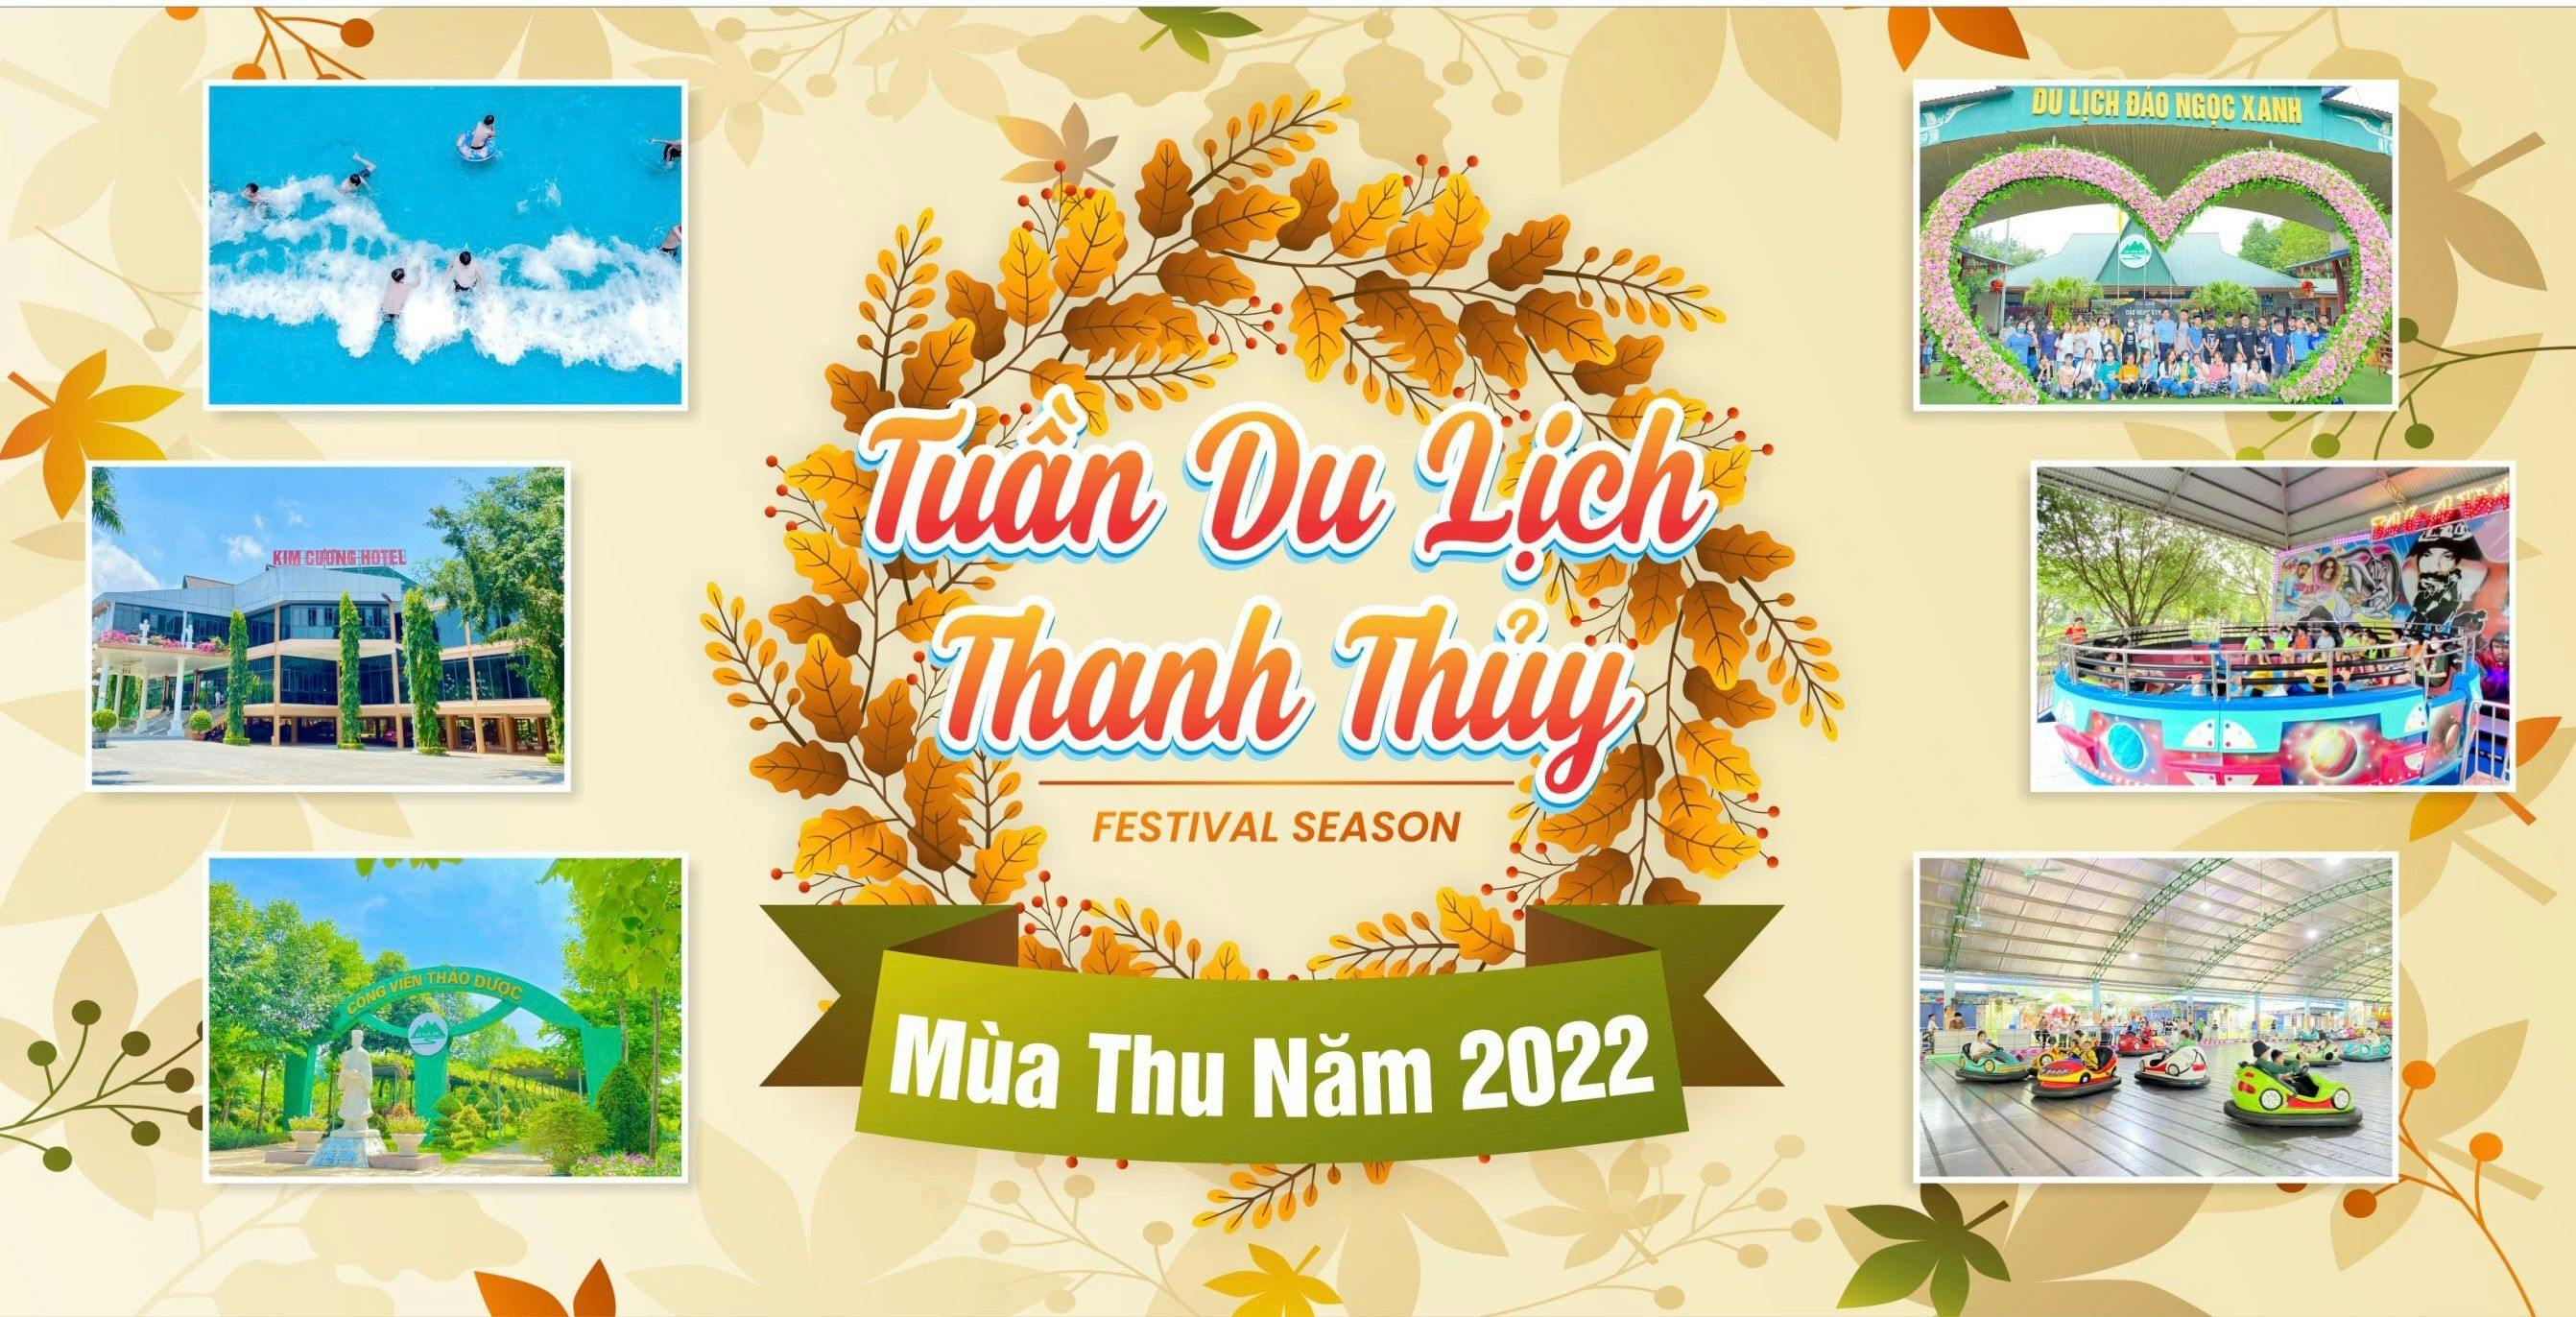 TUẦN DU LỊCH THANH THỦY 2022